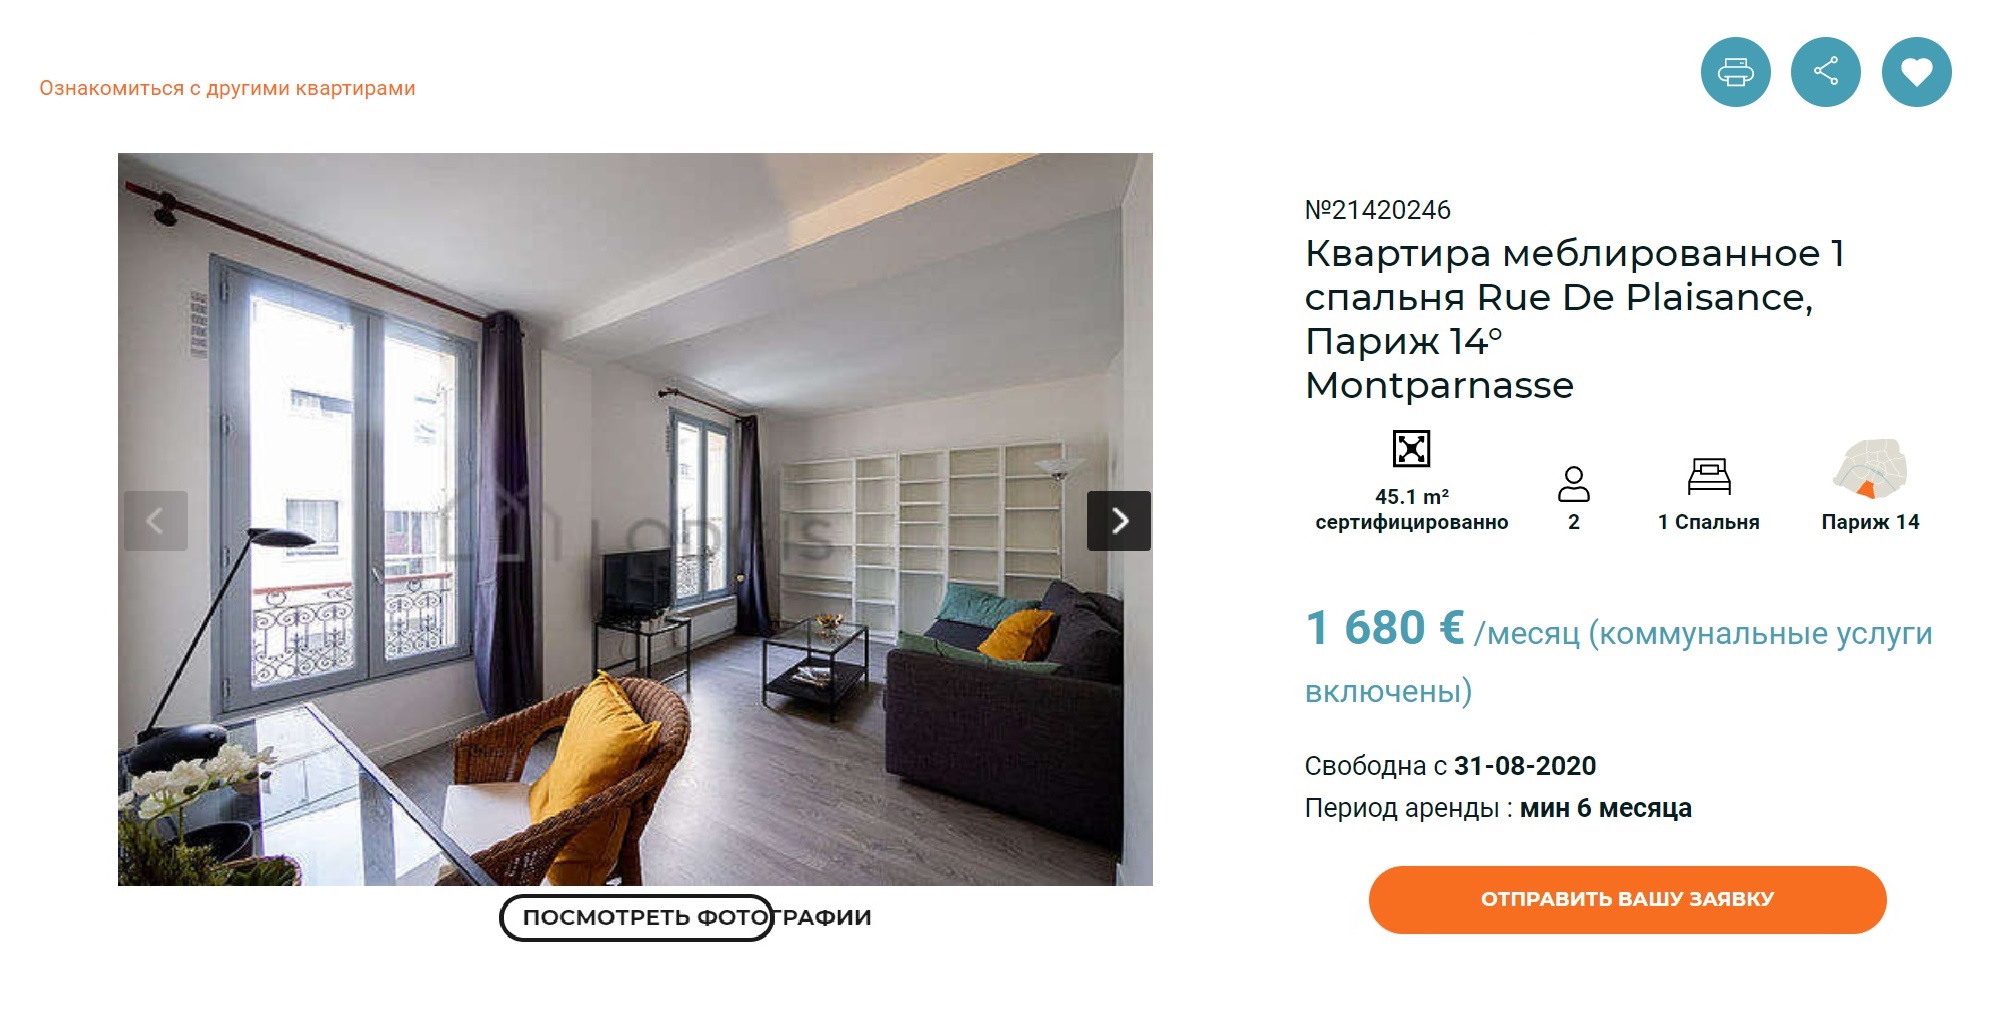 Типичное объявление о сдаче квартиры в Париже